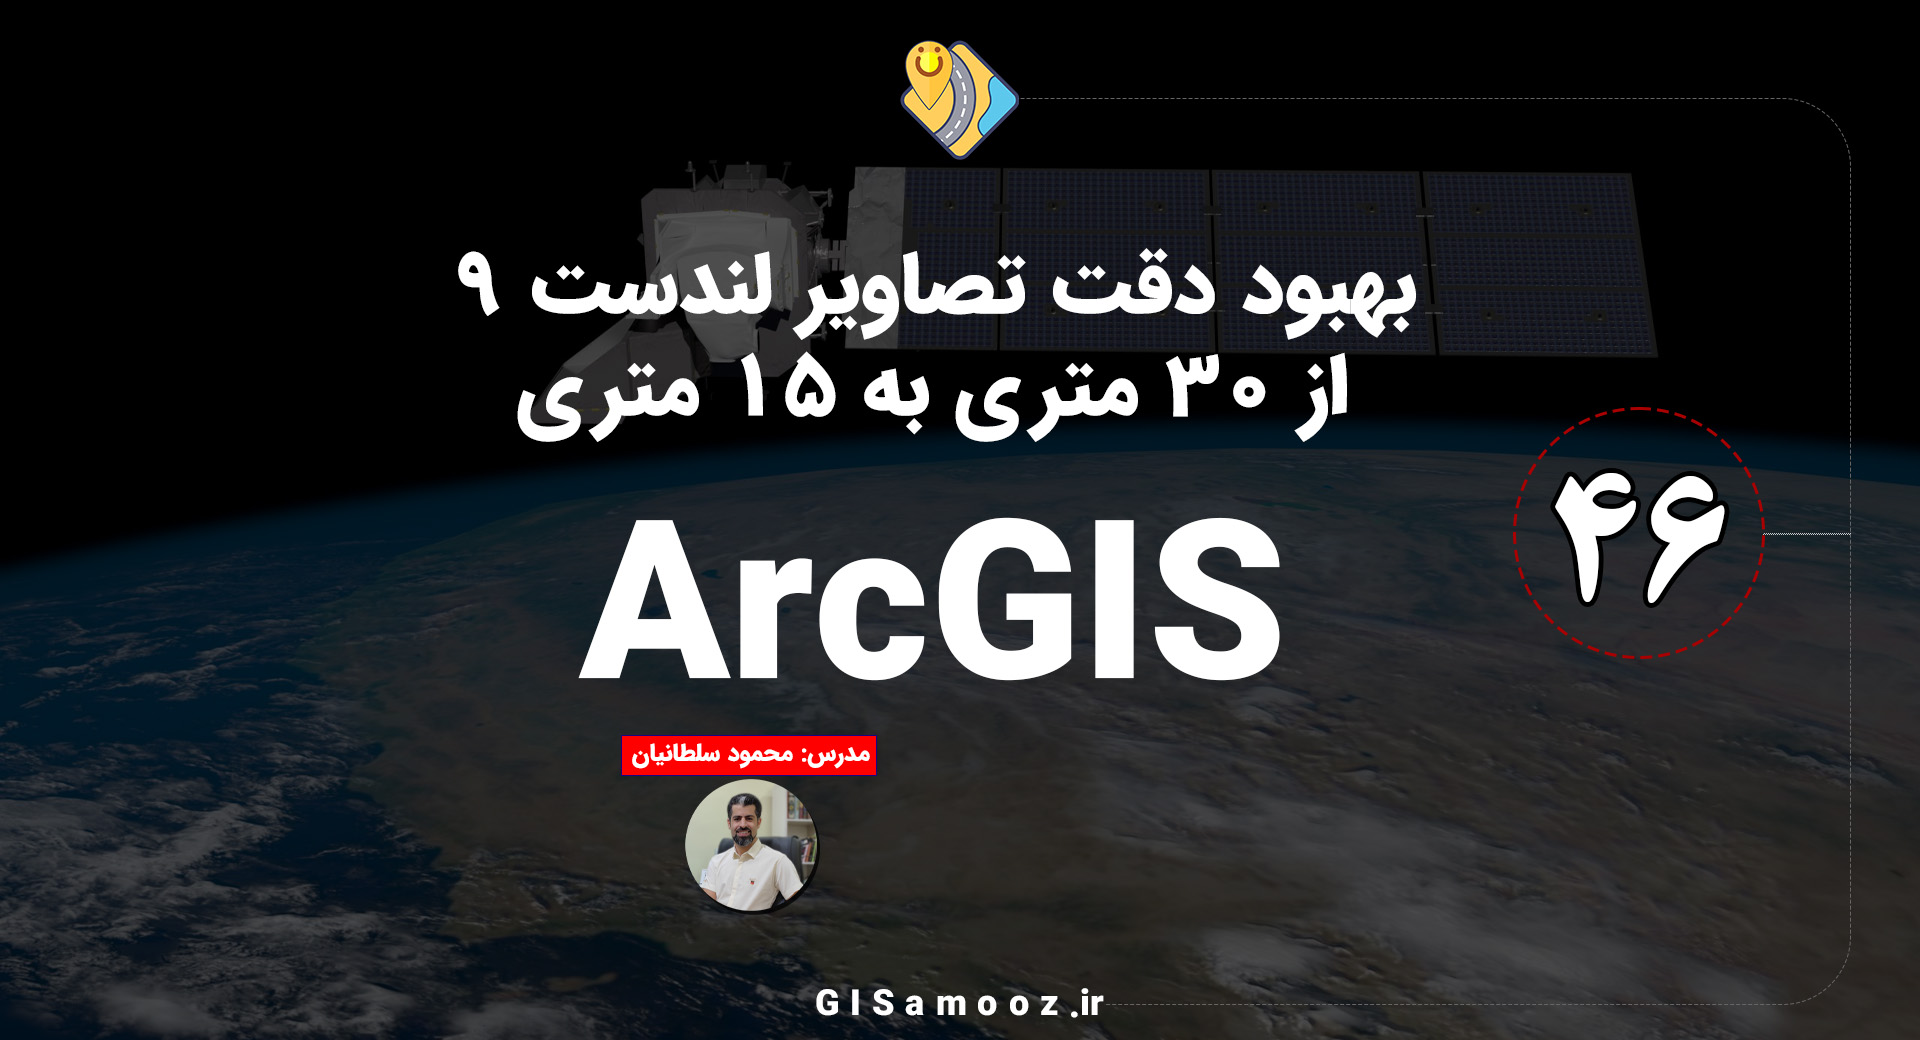 دوره رایگان ArcGIS برای تصاویر ماهواره ای لندست